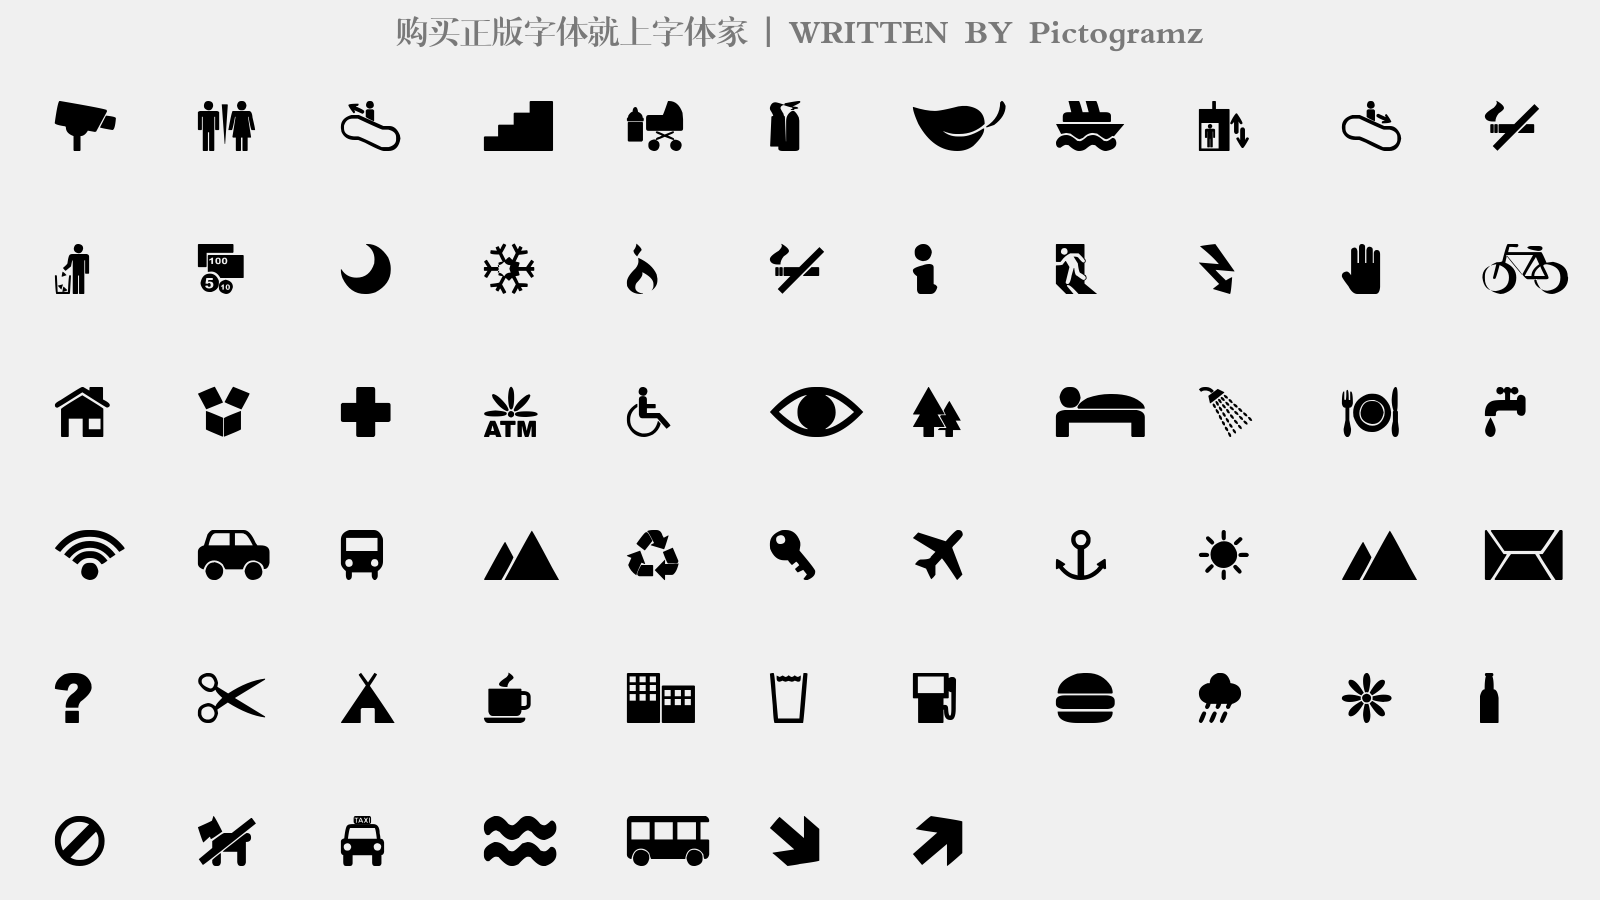 Pictogramz - 大写字母/小写字母/数字